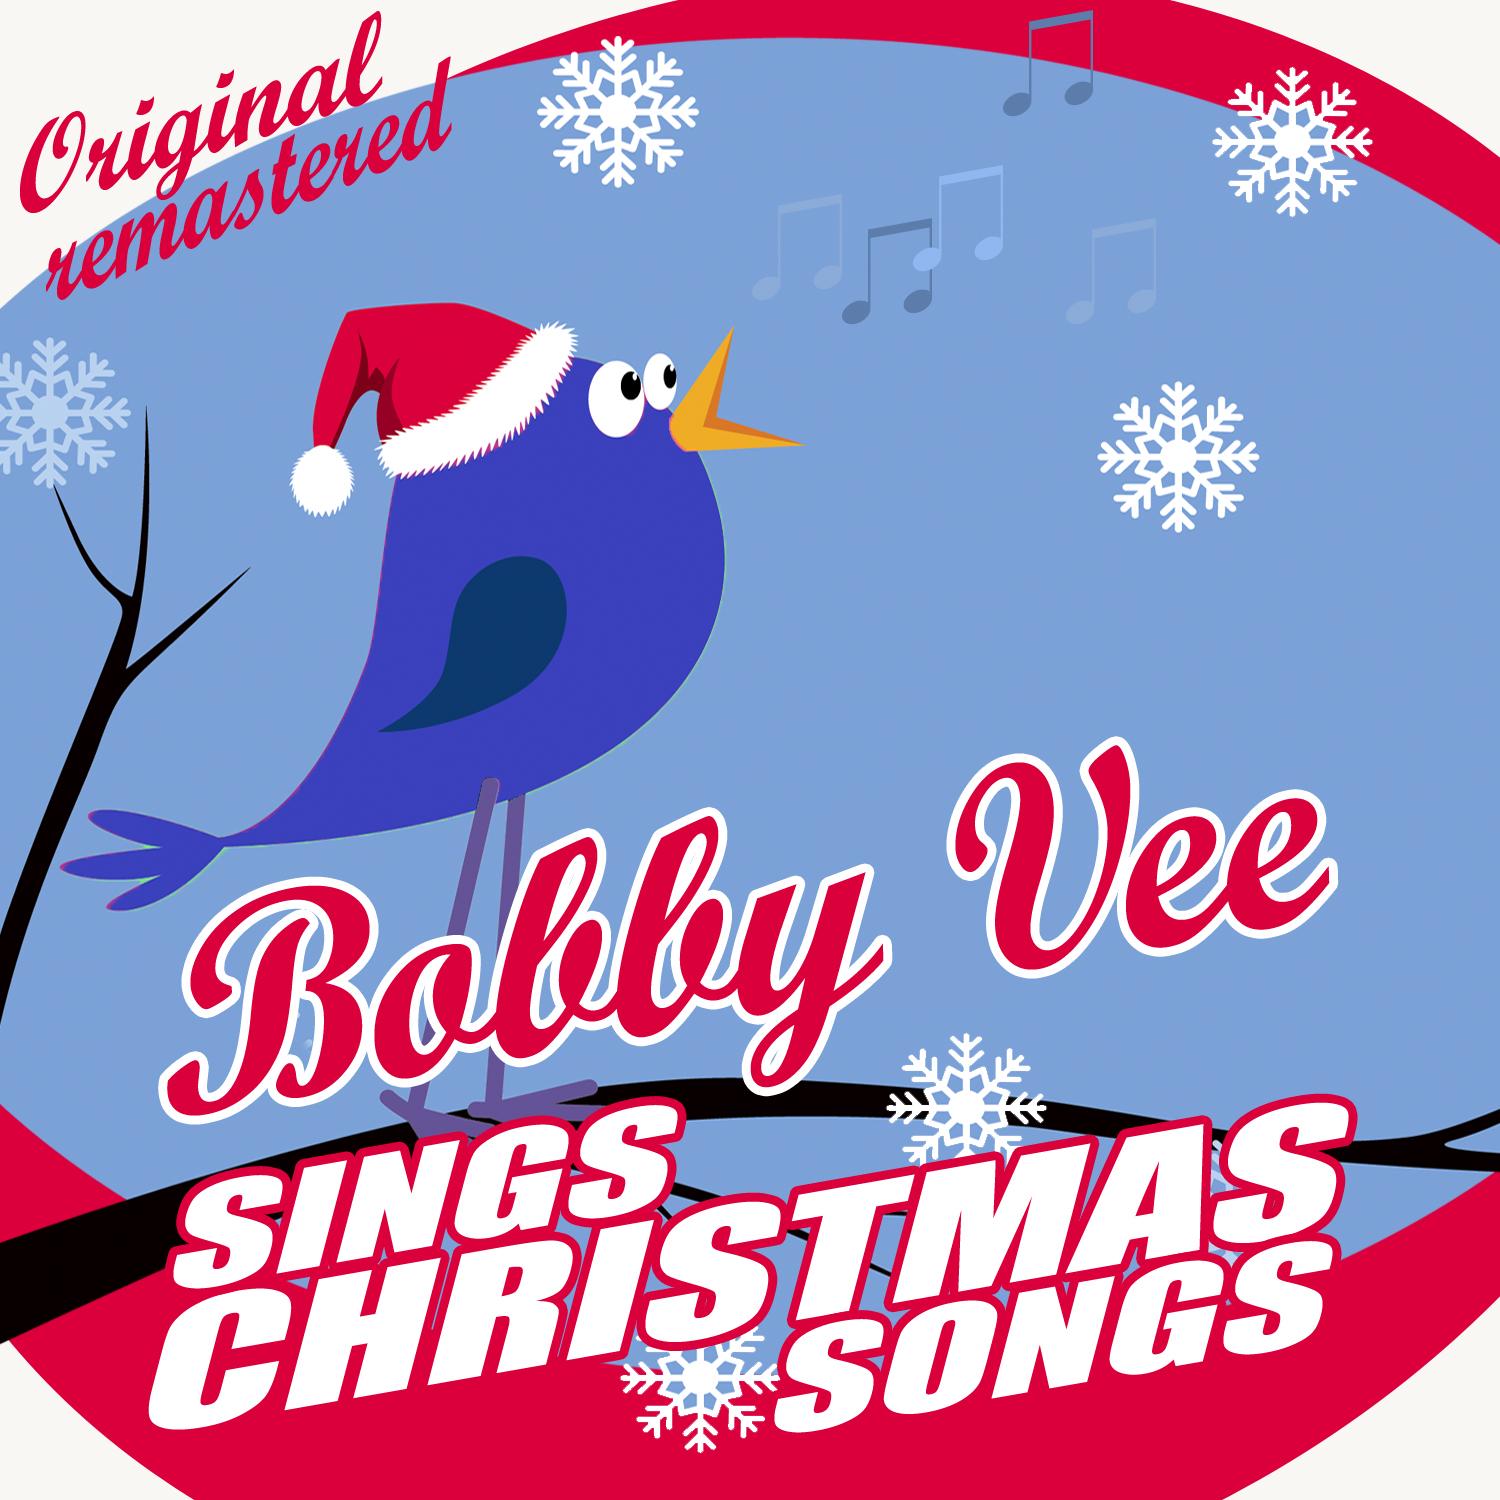 Bobby Vee Sings Christmas Songs